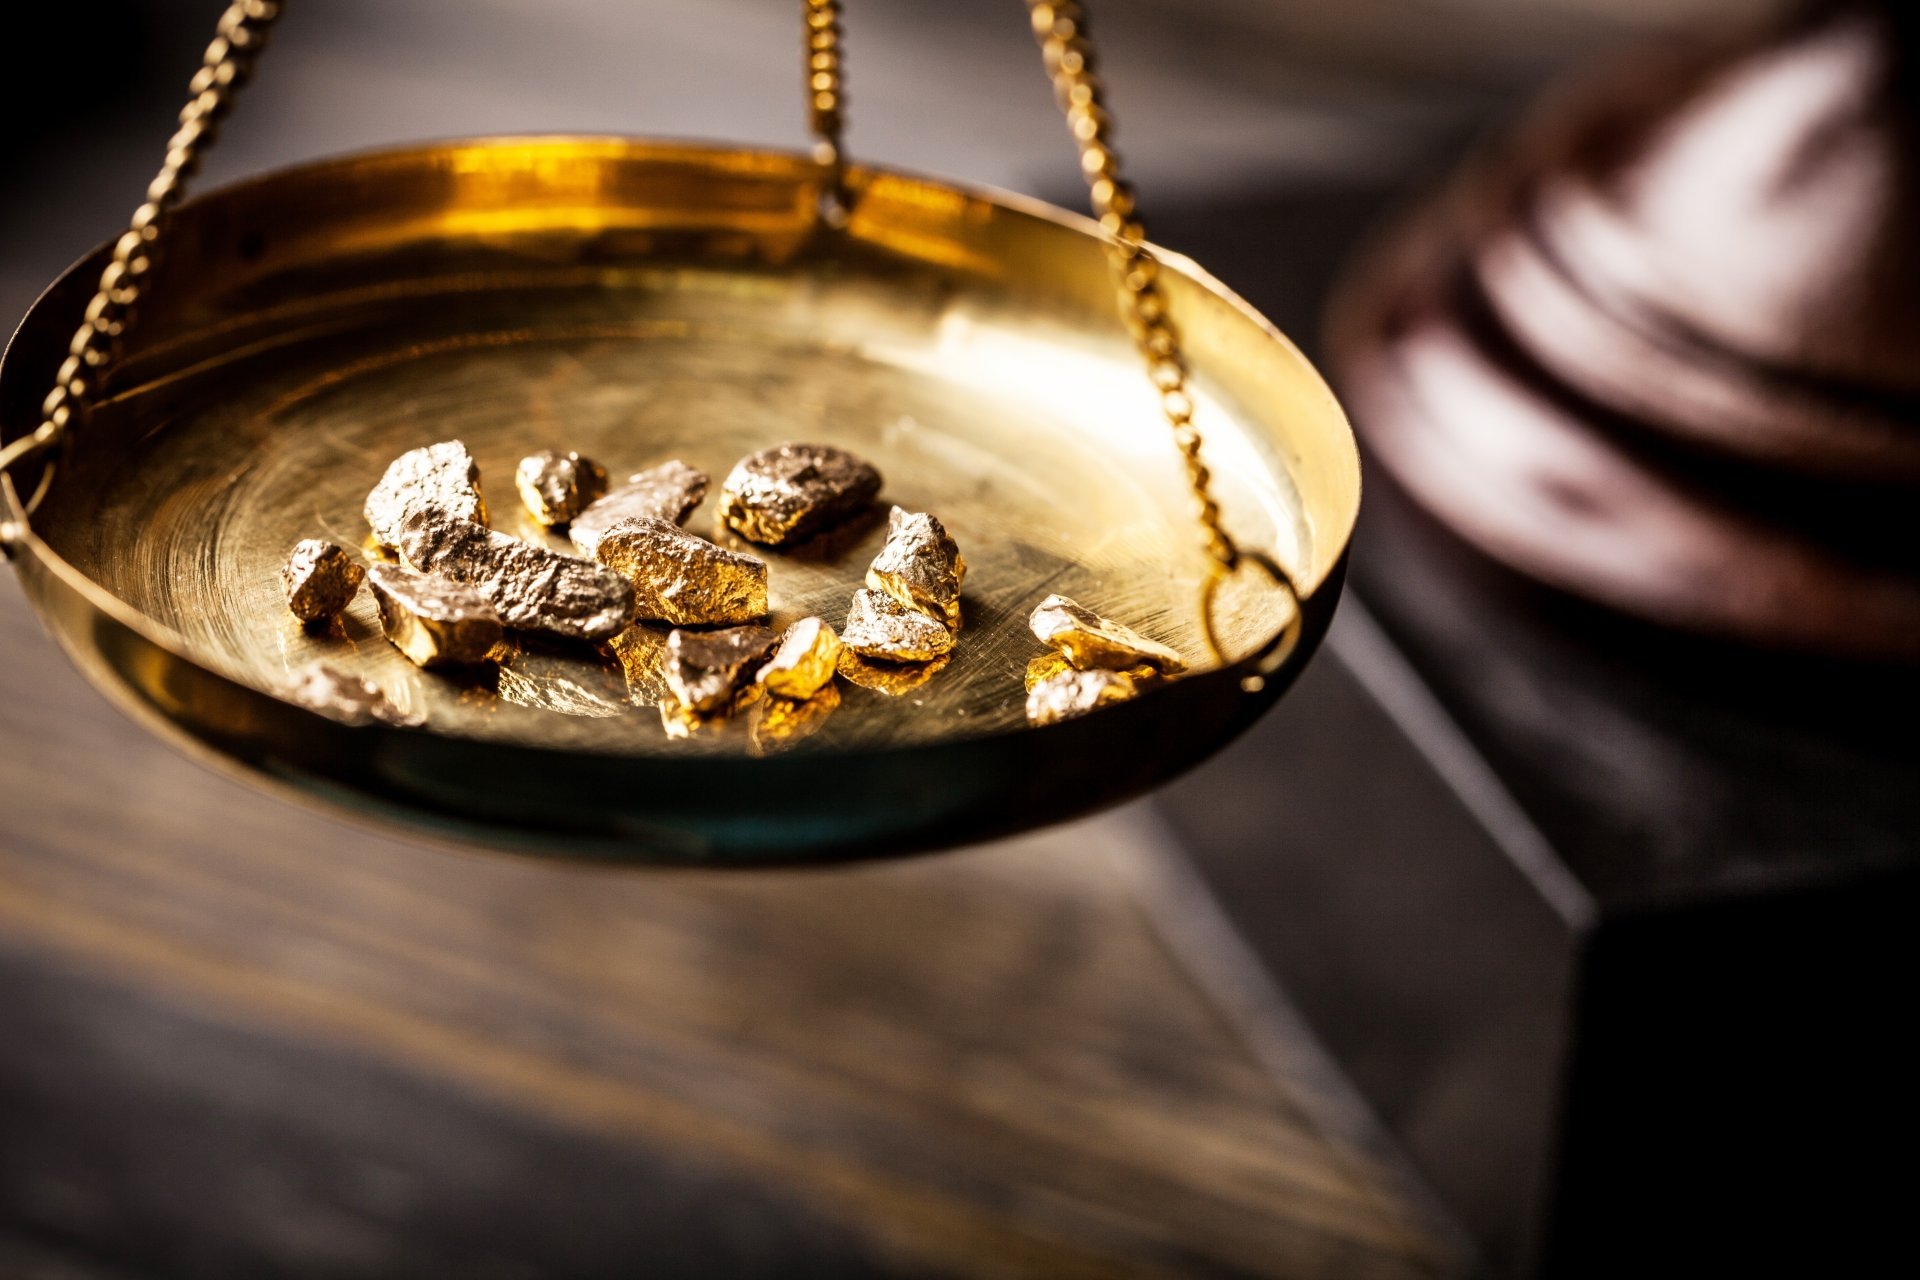 در بازار طلا و سکه چه خبر است؟